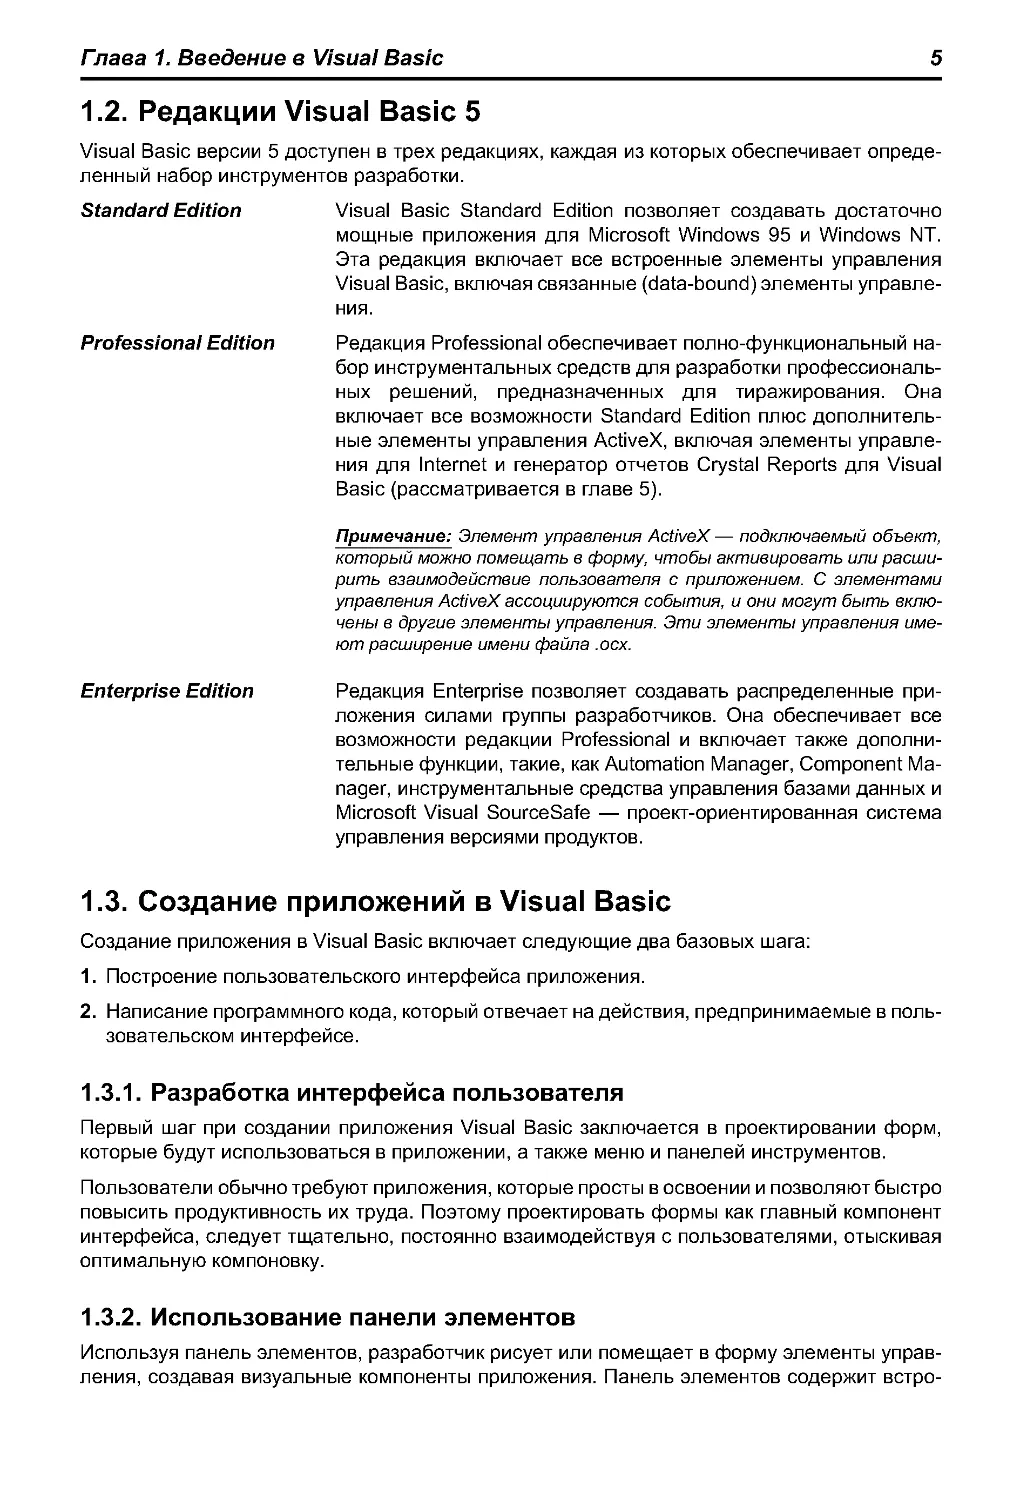 1.2. Редакции Visual Basic 5
1.3. Создание приложений в Visual Basic
1.3.2. Использование панели элементов